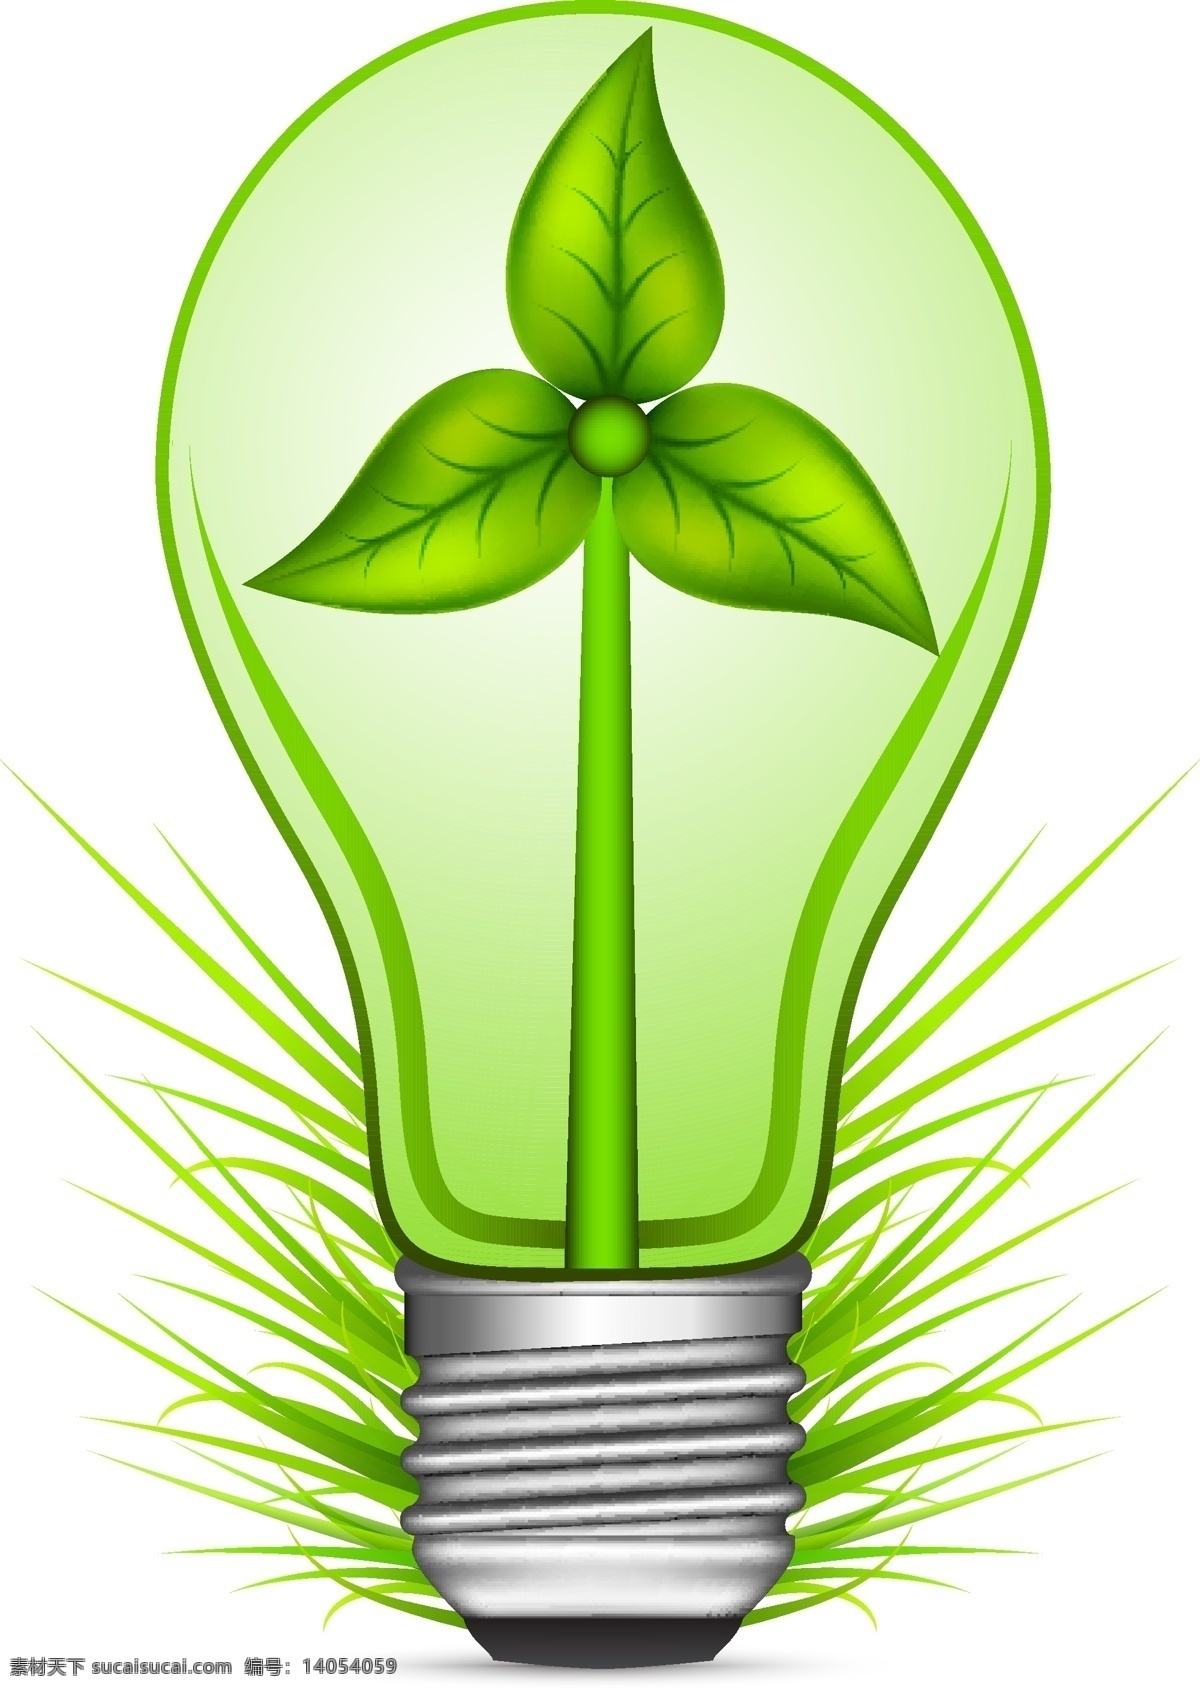 生态地球 绿叶 绿色 节能 能源 环保 水珠 电灯 eco 生态 手绘 时尚 背景 矢量